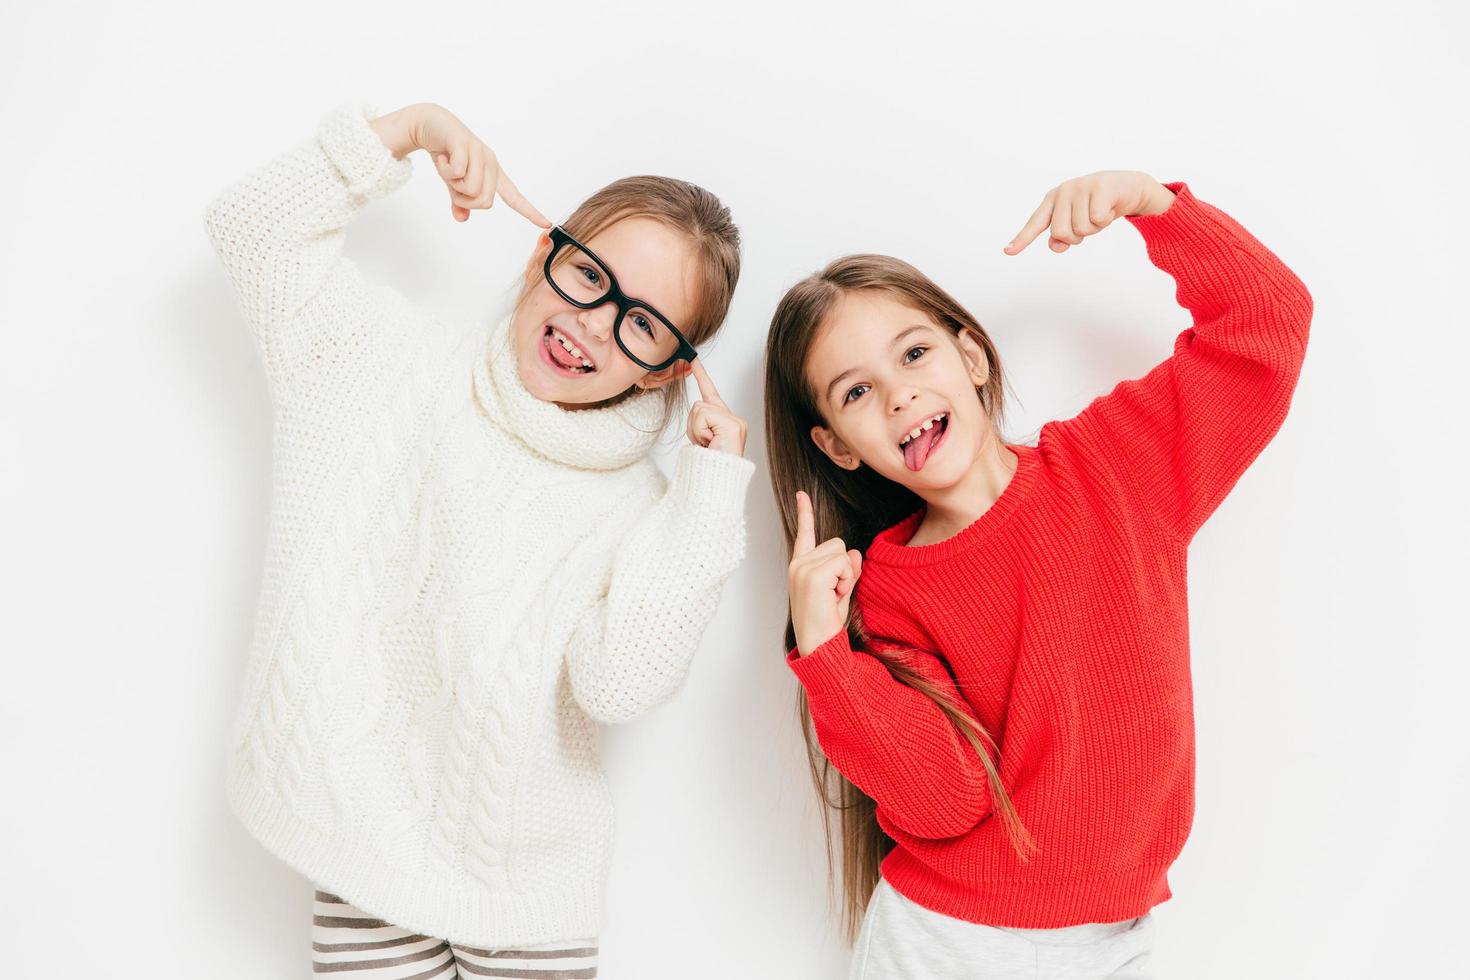 vrolijke meisjes zijn in een goed humeur, dragen een oversized trui en een bril, maken een cool teken, poseren samen tegen een witte achtergrond. gelukkige vrouwelijke kinderen hebben plezier. kindertijd en geluk concept foto